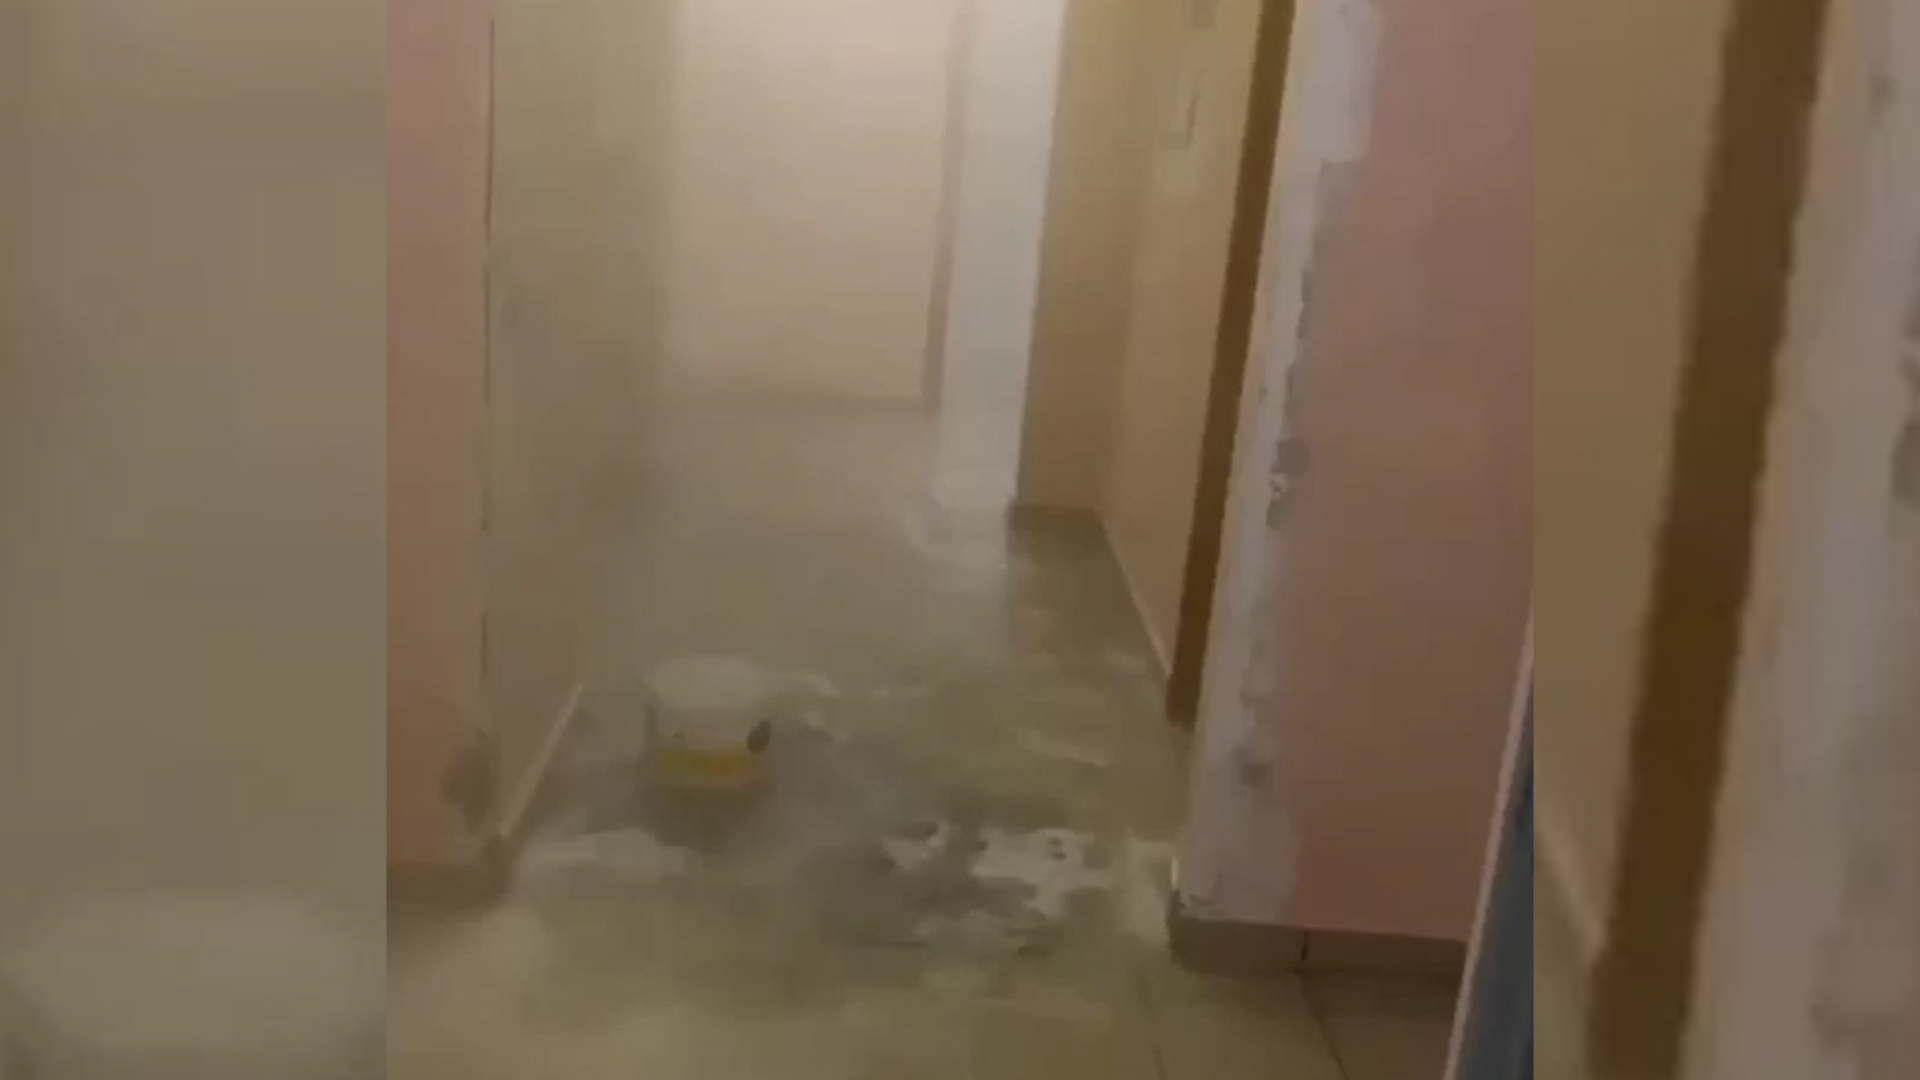 В подмосковной Балашихе подъезд жилого дома затопило кипятком